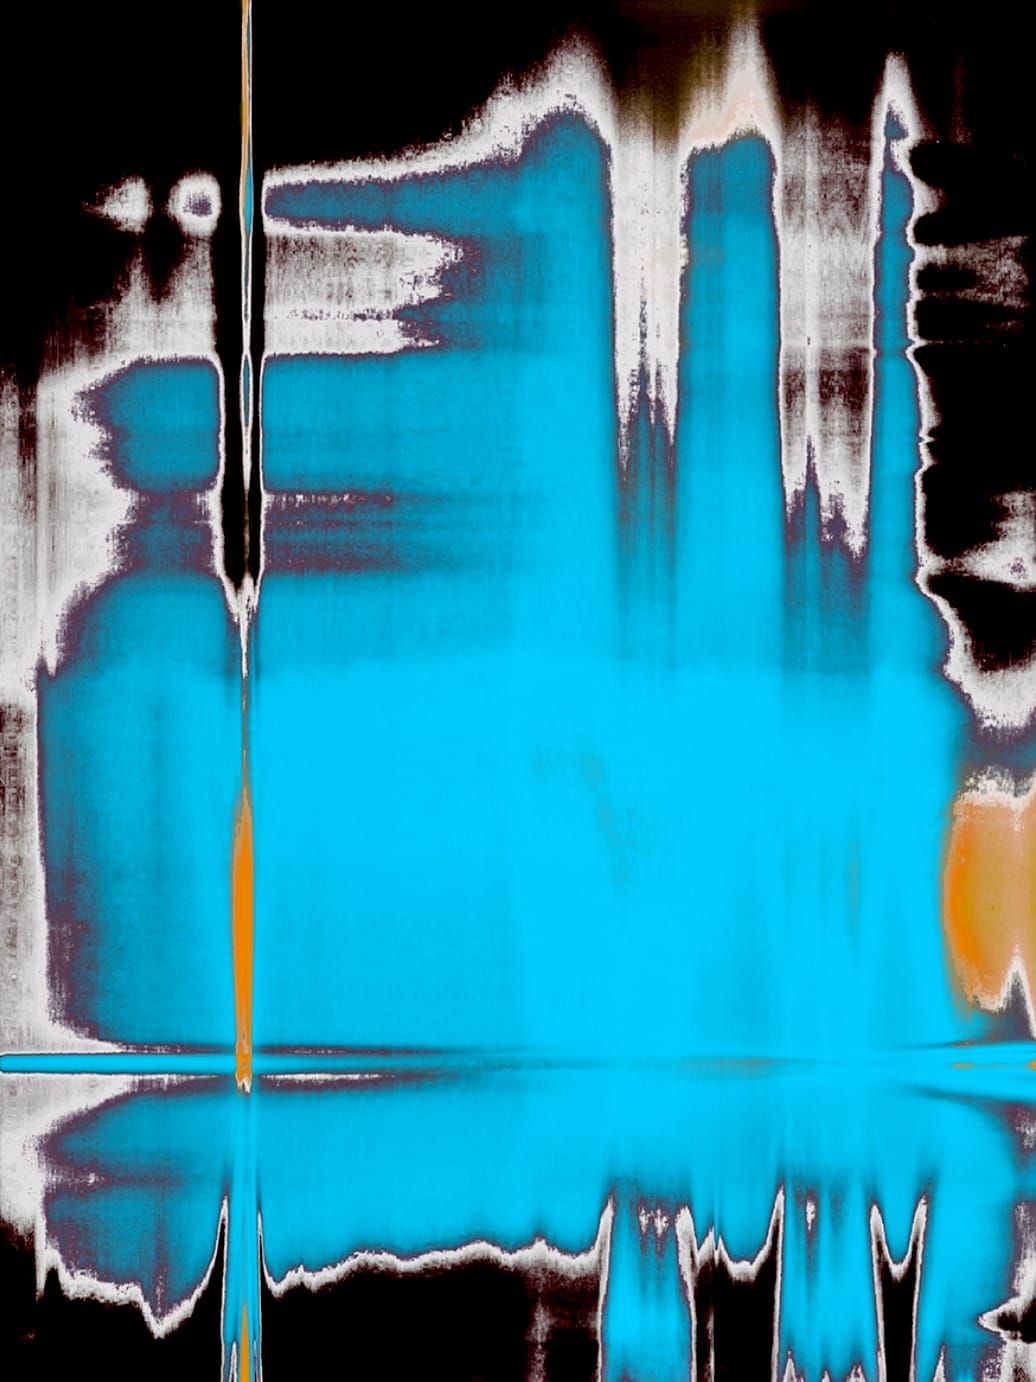 Fotografie, Scanografie von Michael Monney alias acylmx, Abstraktes Bild in Blau